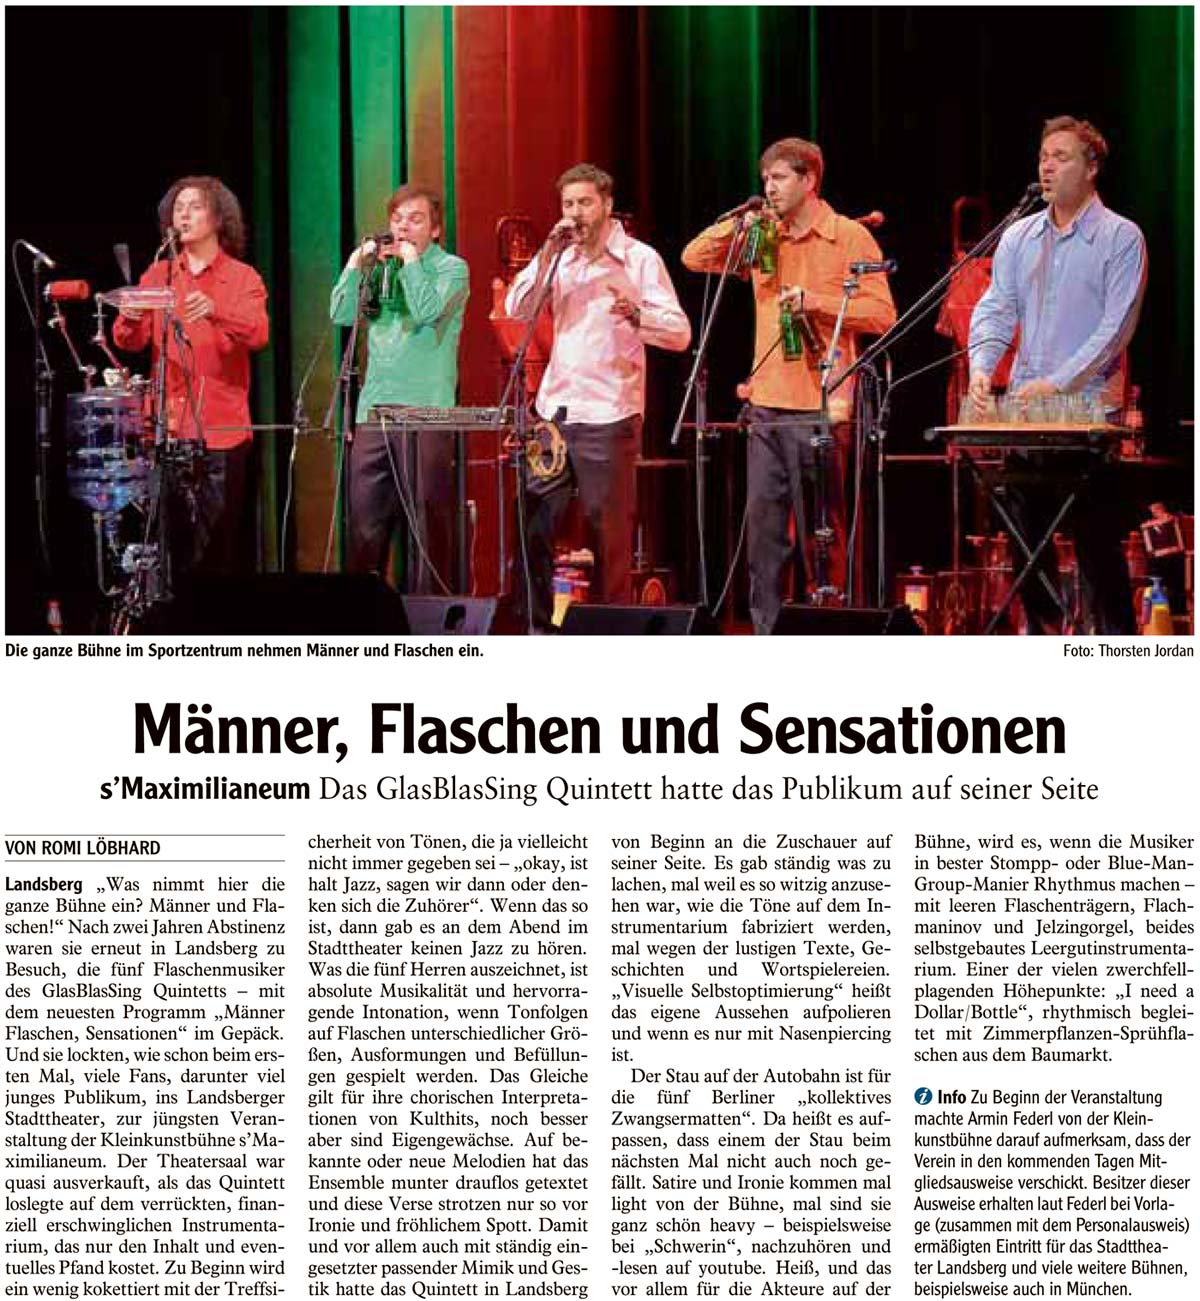 Bild der Kritik aus dem Landsberger Tagblatt vom 25.01.2015